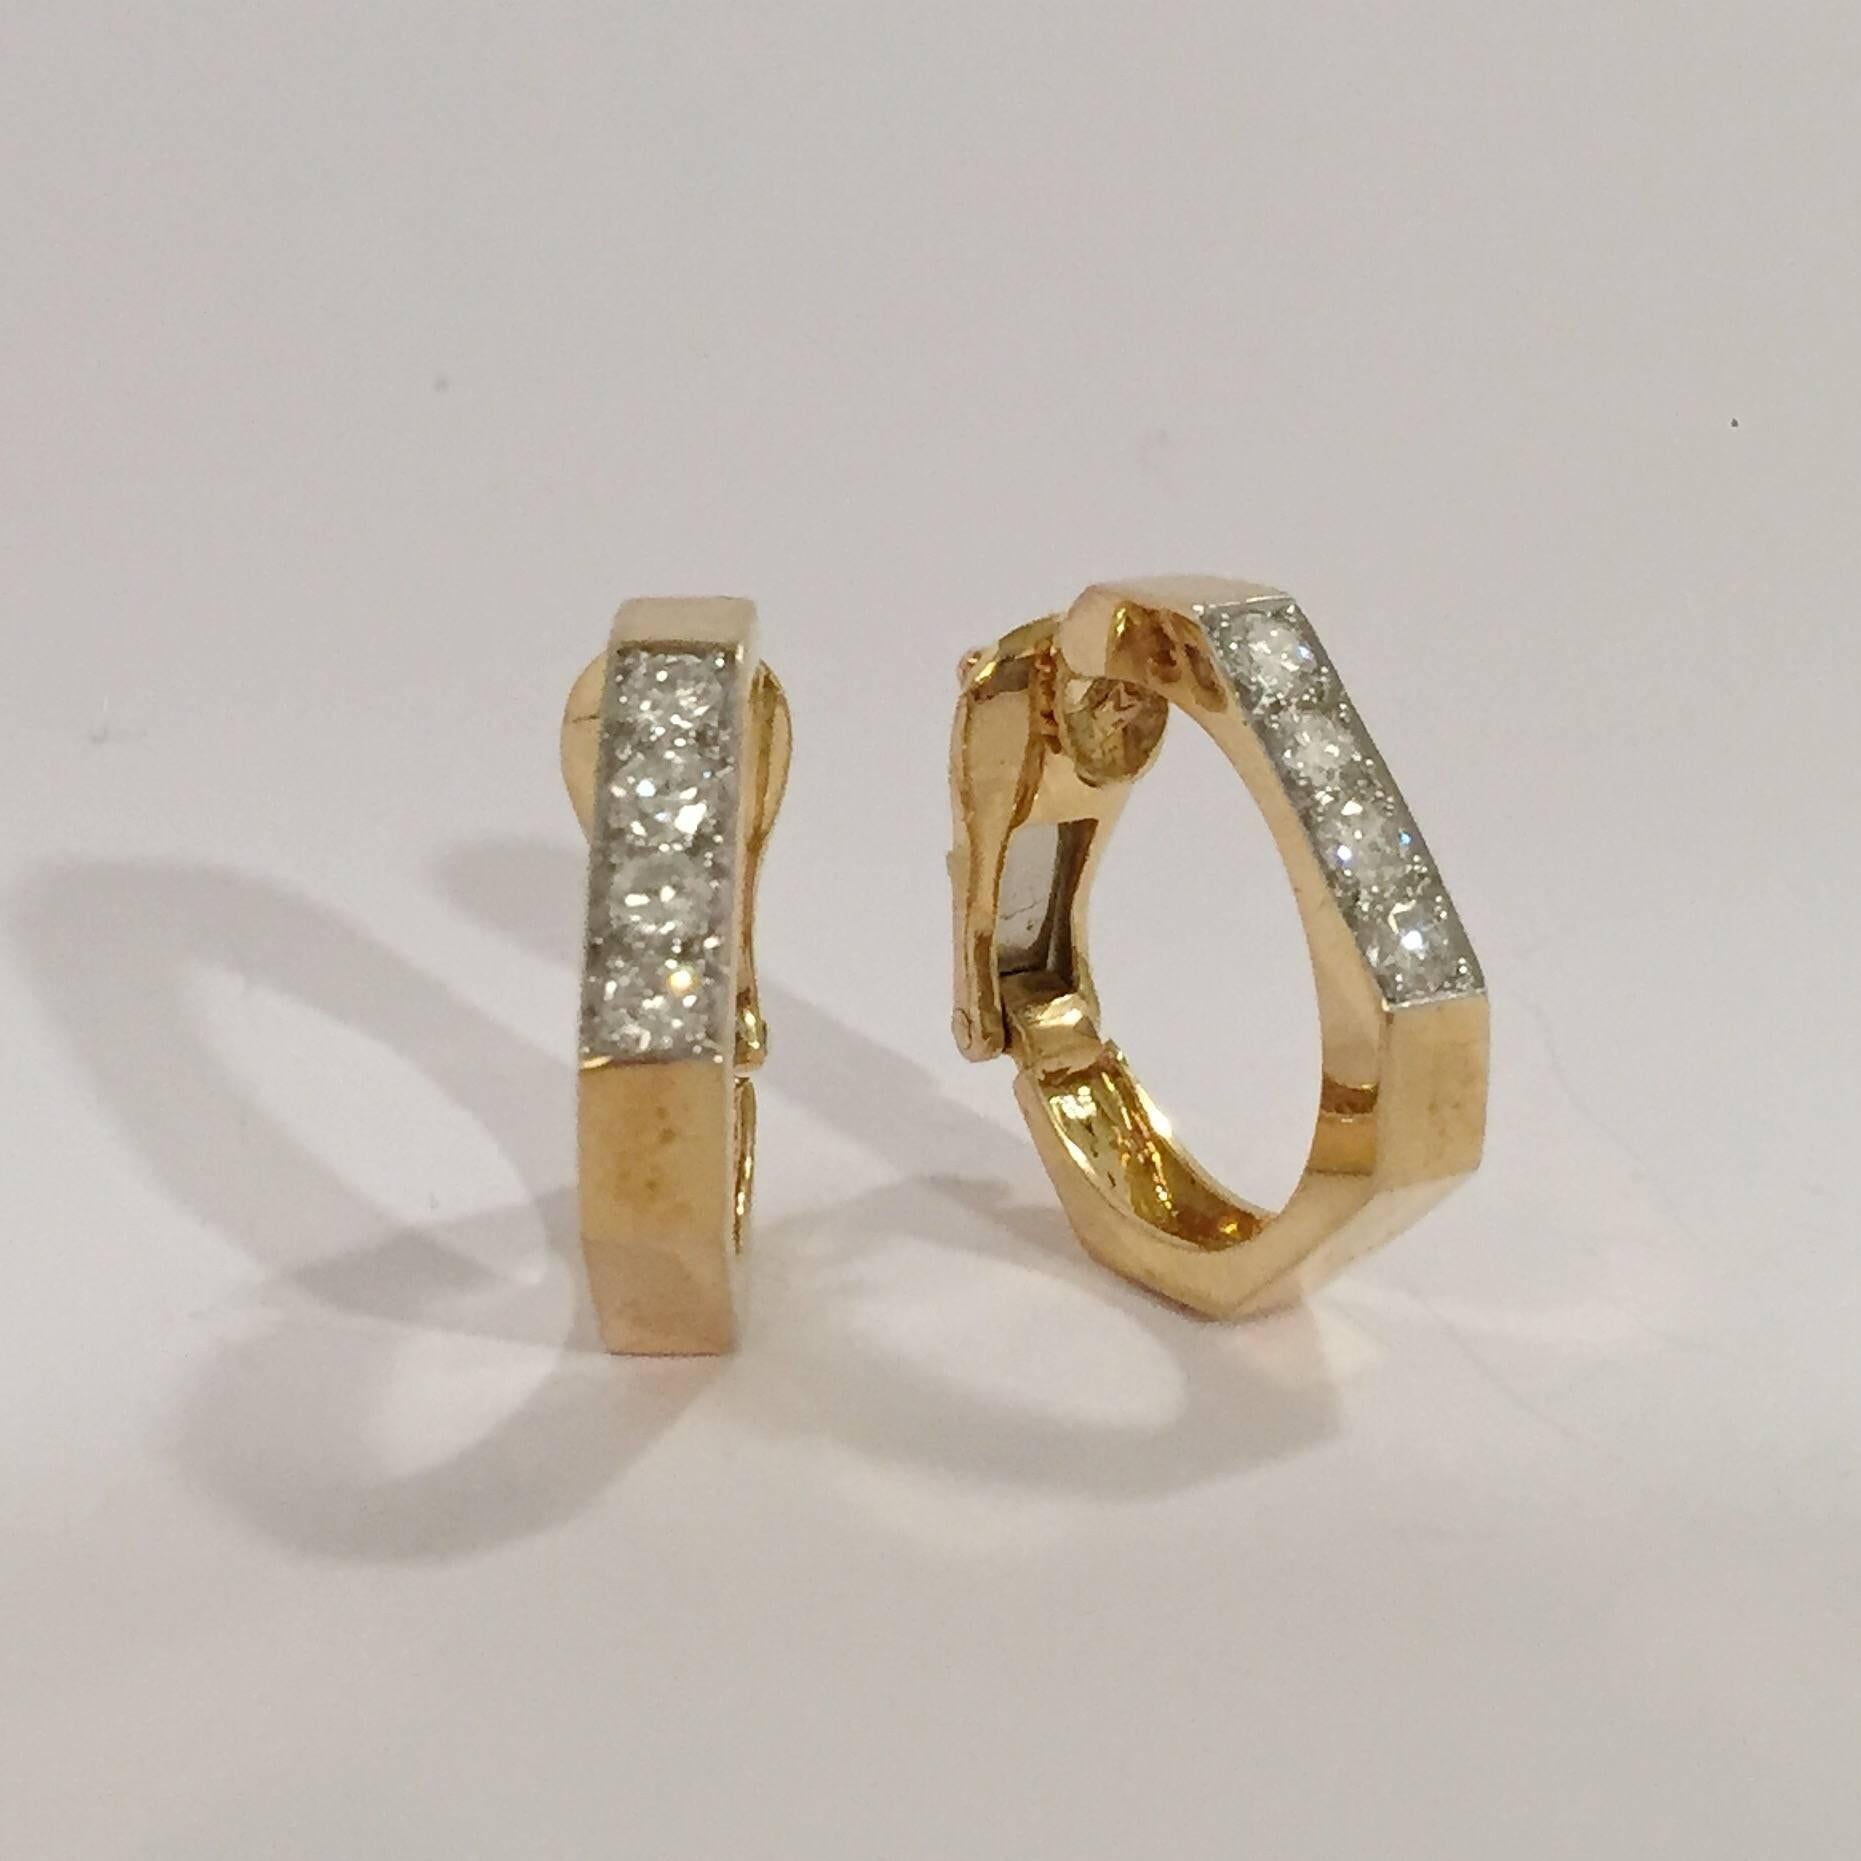 18kt Gelbgold Diamond Hoop gewinkelt Form Clip-Ohrring, David Webb.  Die Hoops enthalten 6 runde Diamanten mit einem Gewicht von ca  1.00ct.

Die Reifchen sind für Clip-Ohrringe gedacht, können aber auch aufgehängt werden.

Die Ohrringe messen 